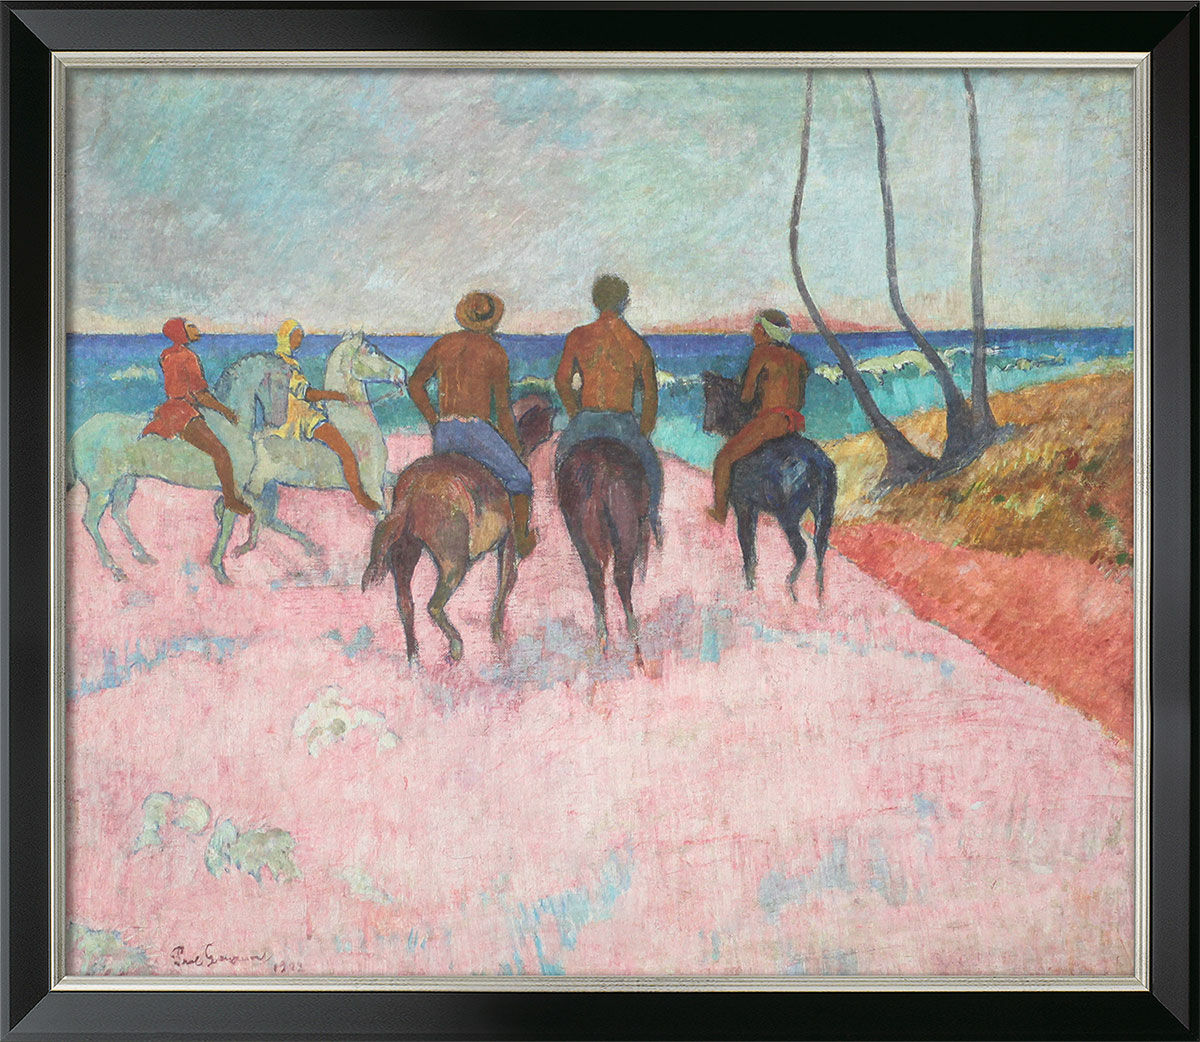 Tableau "Cavalier sur la plage" (1902), encadré von Paul Gauguin